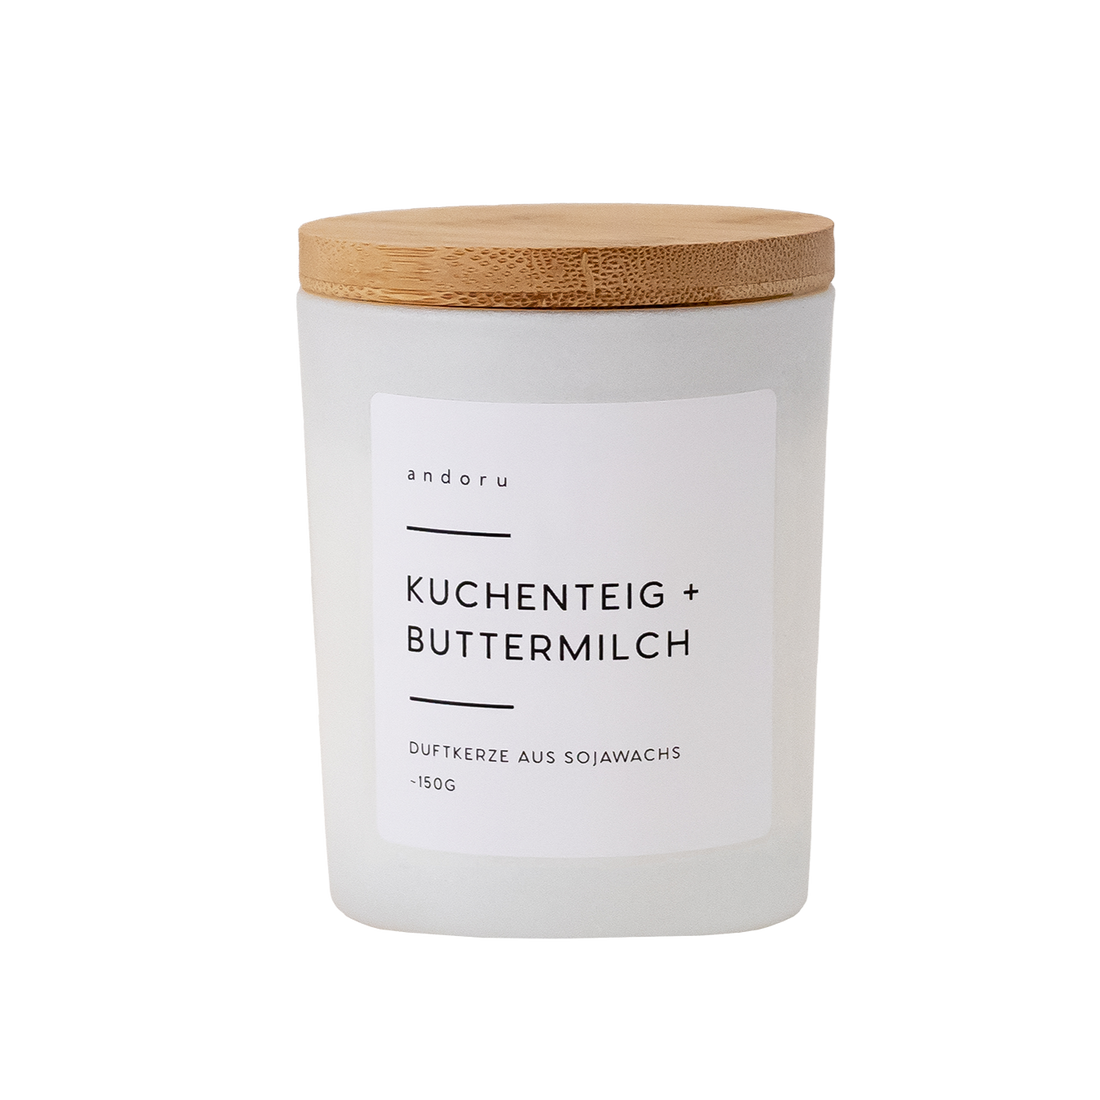 Kuchenteig + Buttermilch - andoru sojawachs duftkerze deko raumduft